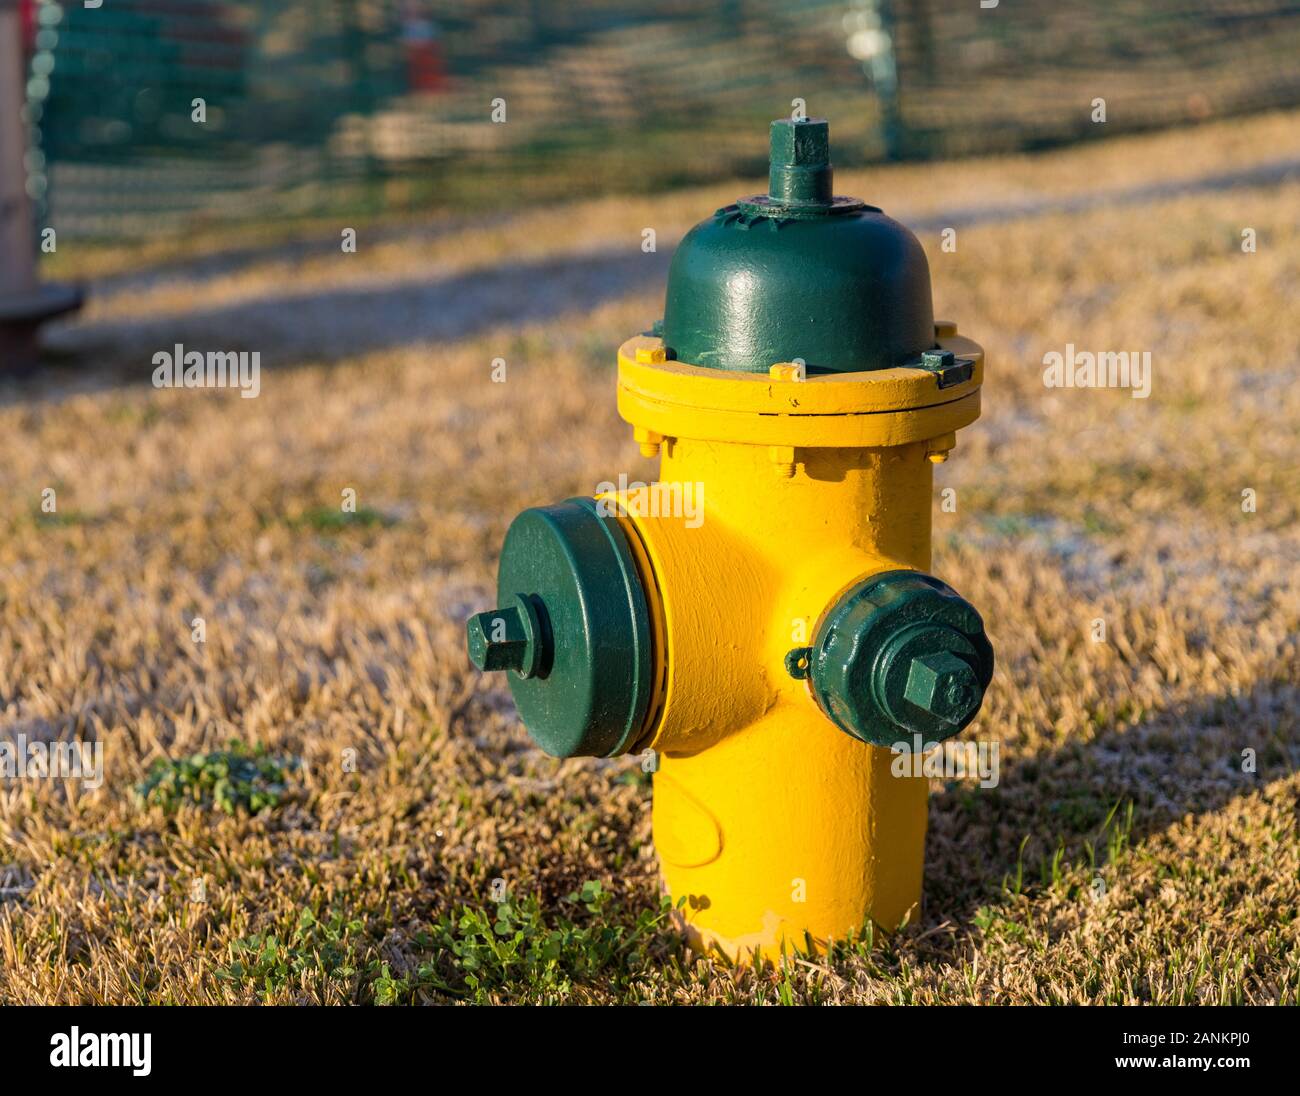 Jaune et vert, couleur d'incendie utilisés pour fournir un volume élevé d'eau Banque D'Images